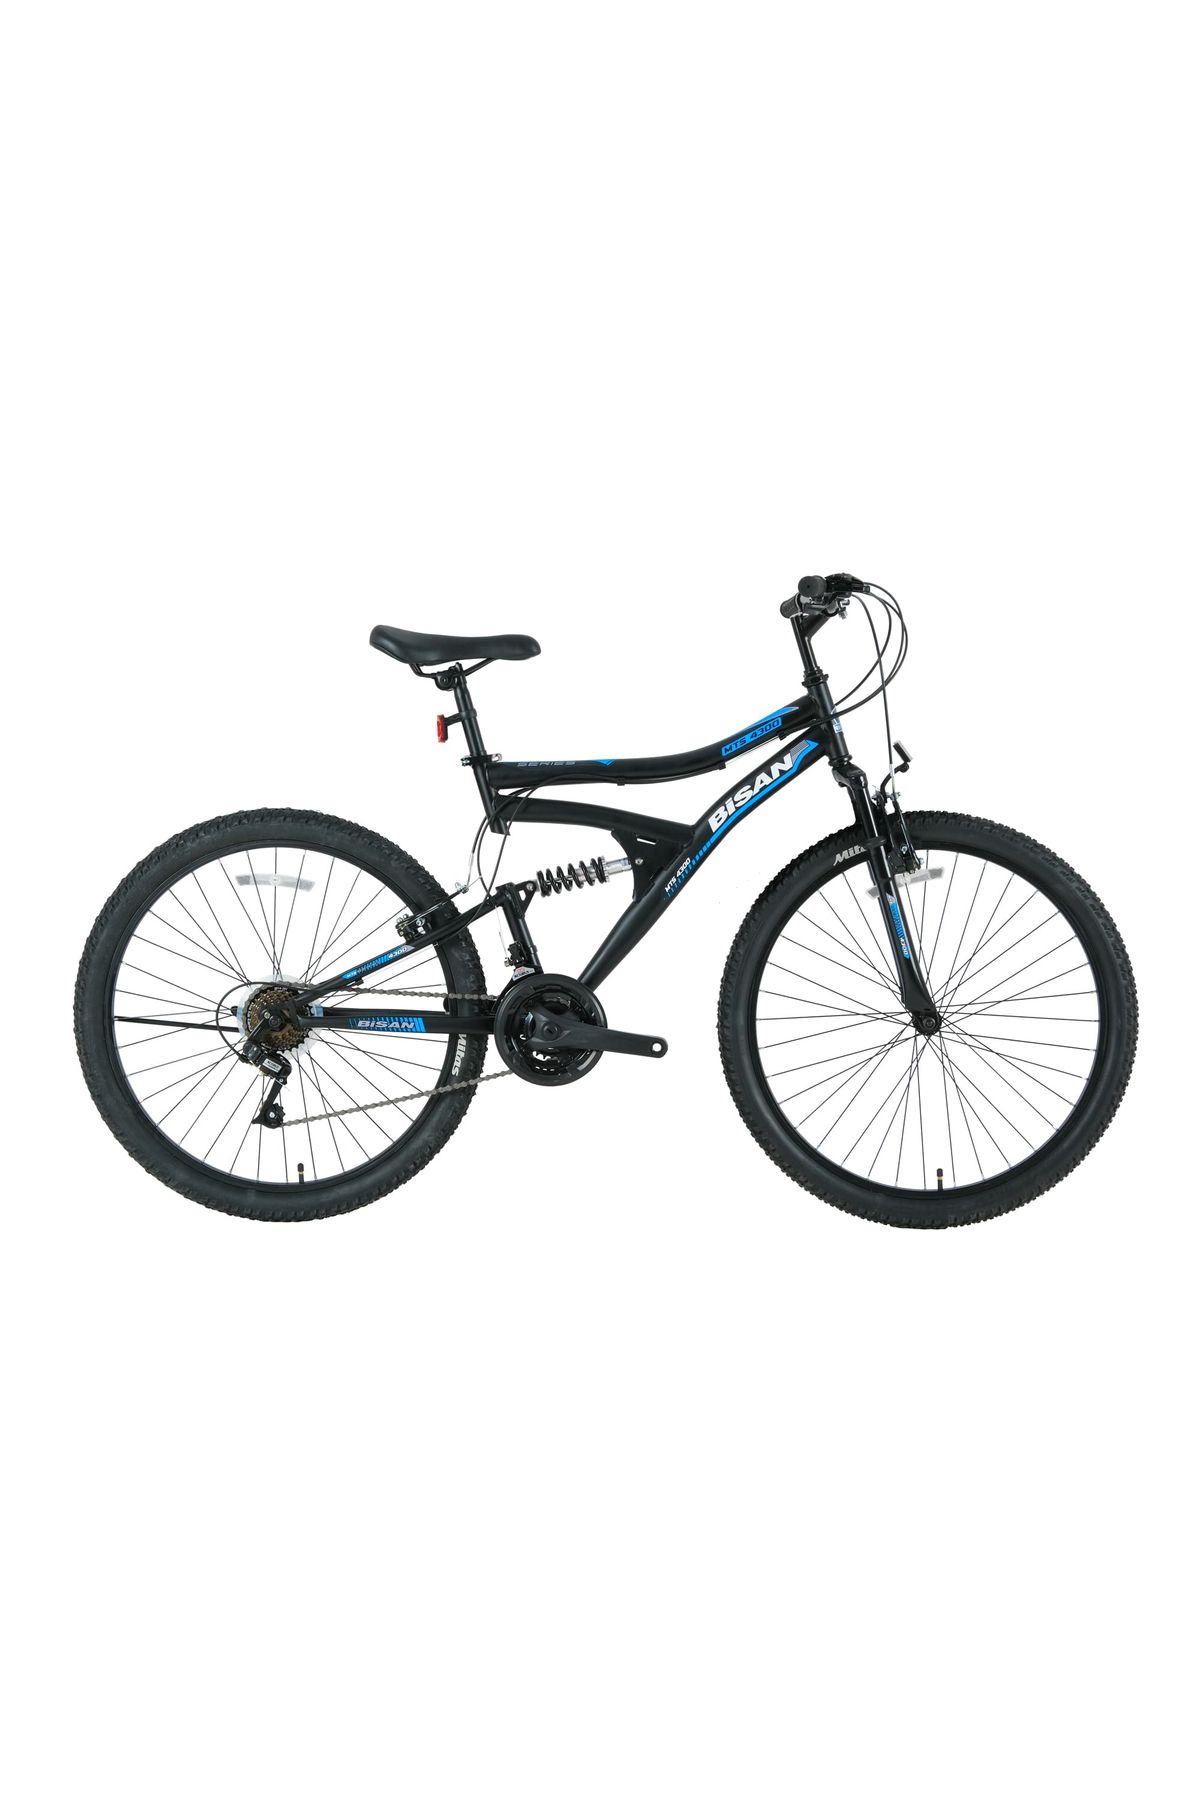 Bisan MTS 4300 24 Jant 21 Vites 40 Cm Kadro Dağ Bisikleti - Mat Siyah/Mavi